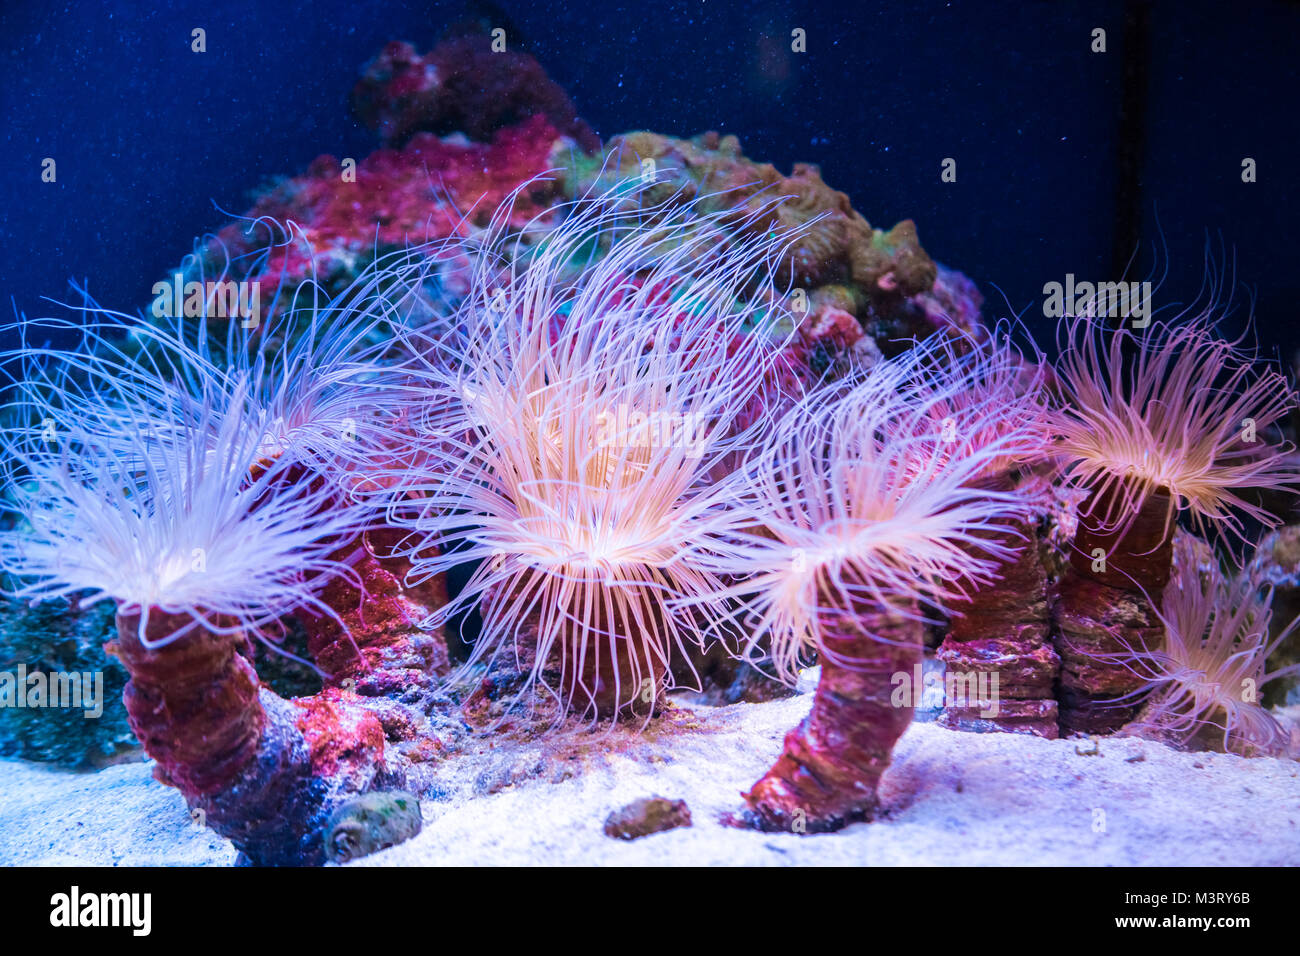 Hermosos corales vivos en los fondos marinos. Excelente background del mundo submarino Foto de stock